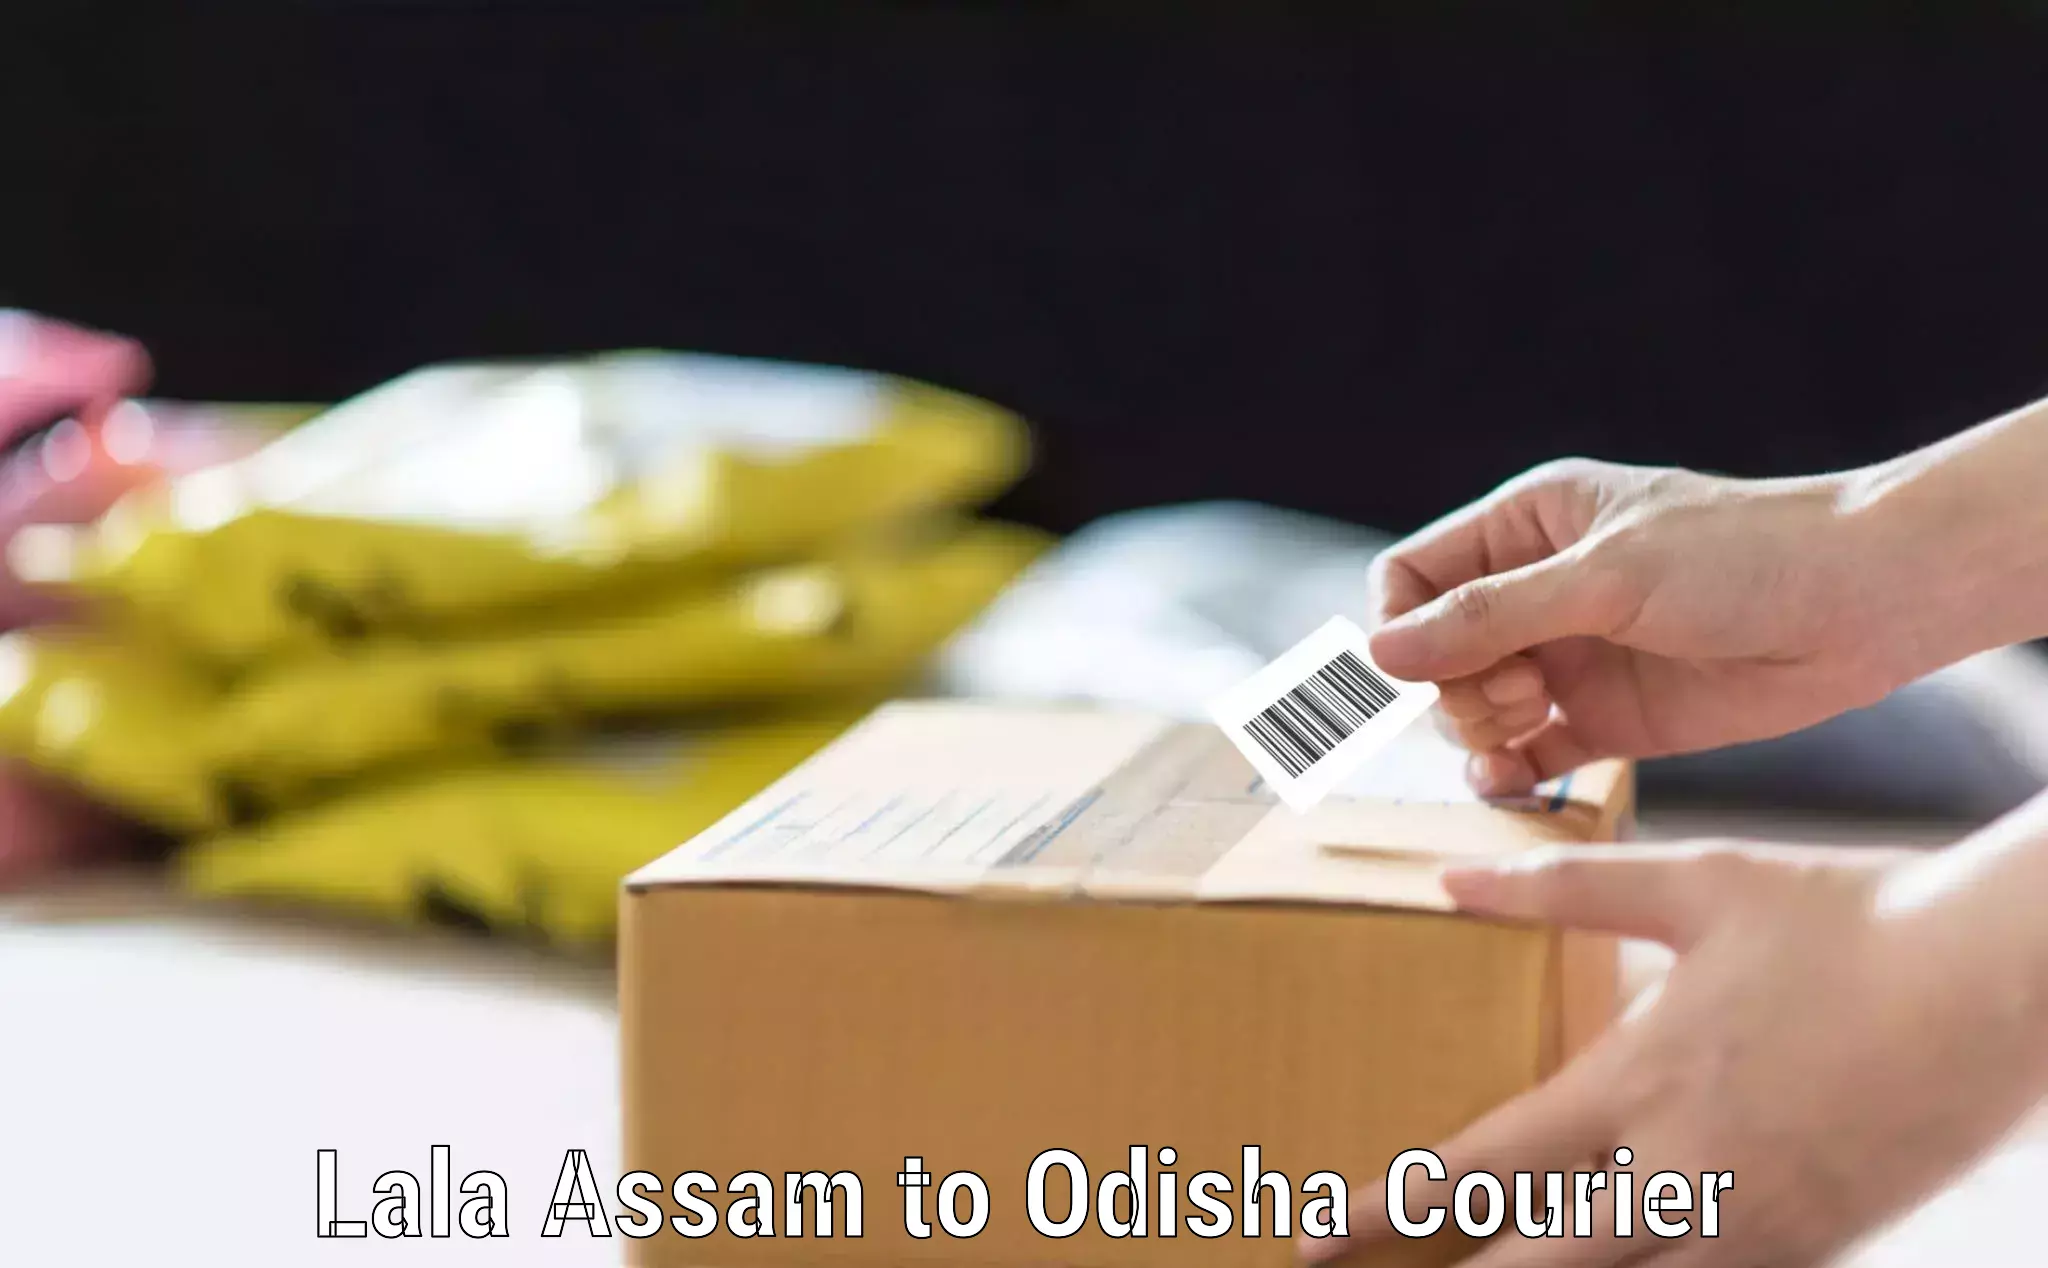 Urgent luggage shipment in Lala Assam to Mathili